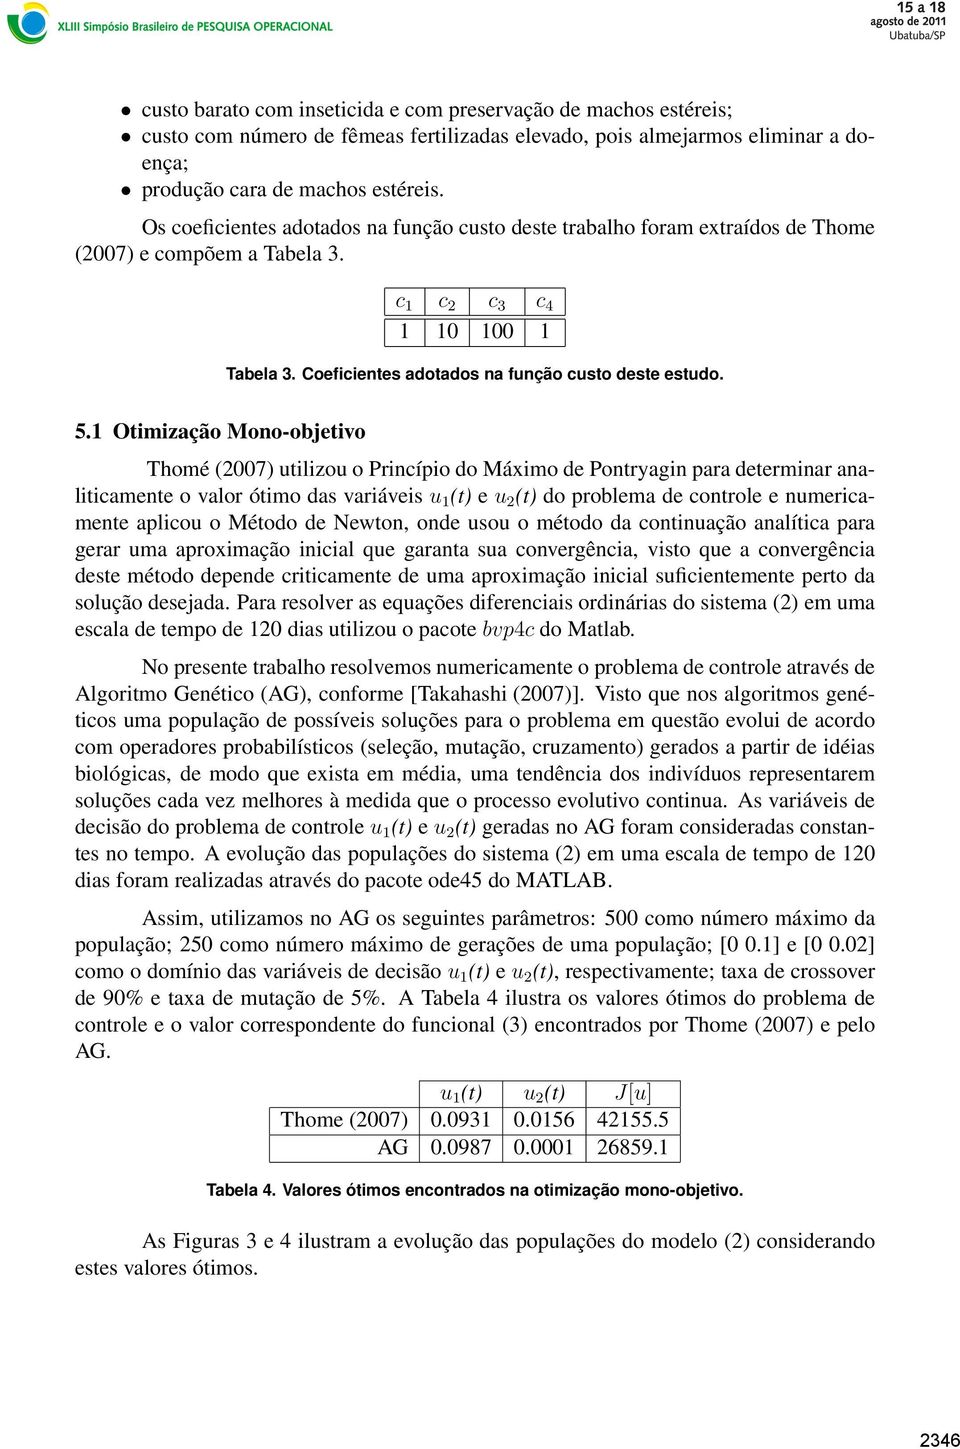 5.1 Otimização Mono-objetivo Thomé (2007) utilizou o Princípio do Máximo de Pontryagin para determinar analiticamente o valor ótimo das variáveis u 1 (t) e u 2 (t) do problema de controle e